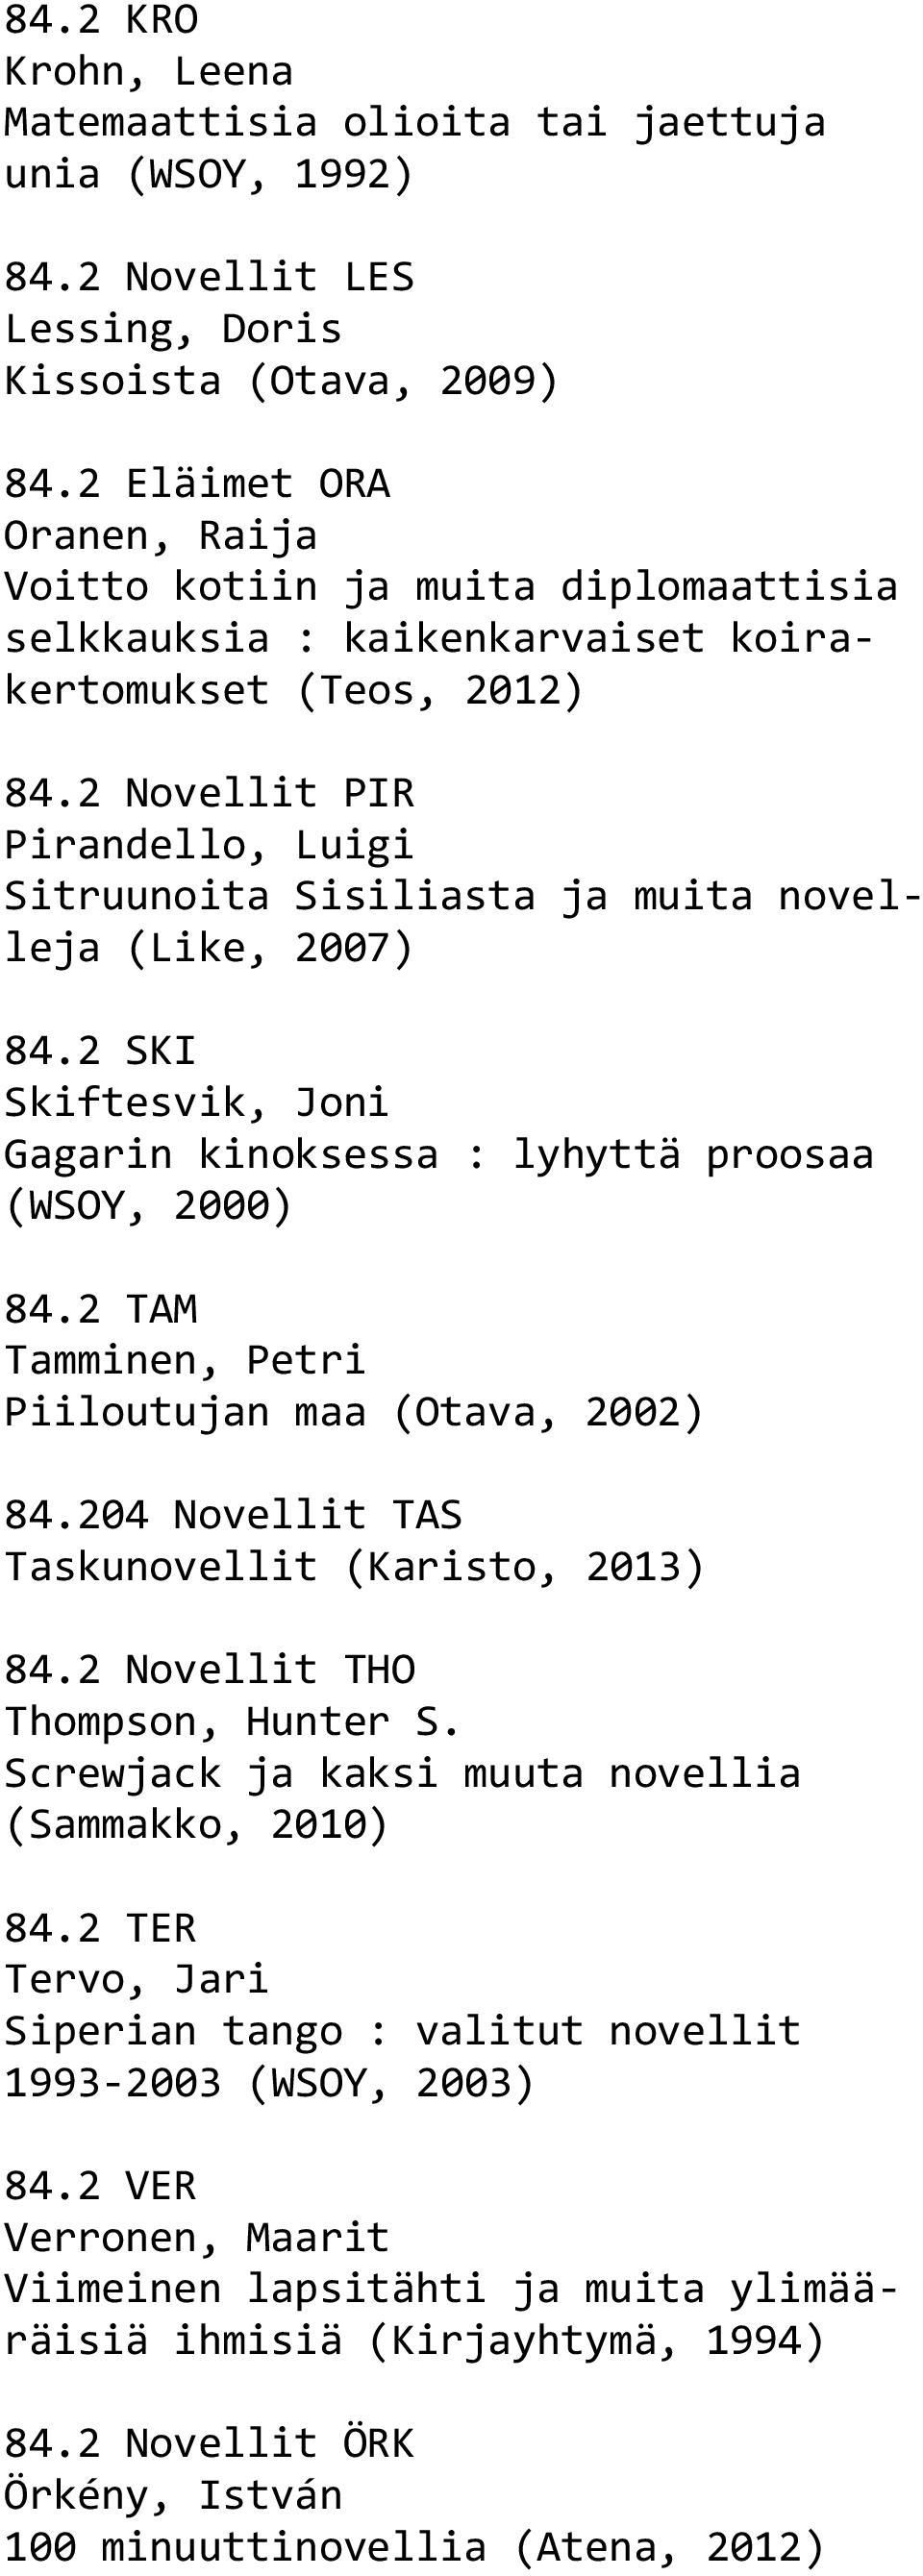 2 Novellit PIR Pirandello, Luigi Sitruunoita Sisiliasta ja muita novelleja (Like, 2007) 84.2 SKI Skiftesvik, Joni Gagarin kinoksessa : lyhyttä proosaa (WSOY, 2000) 84.